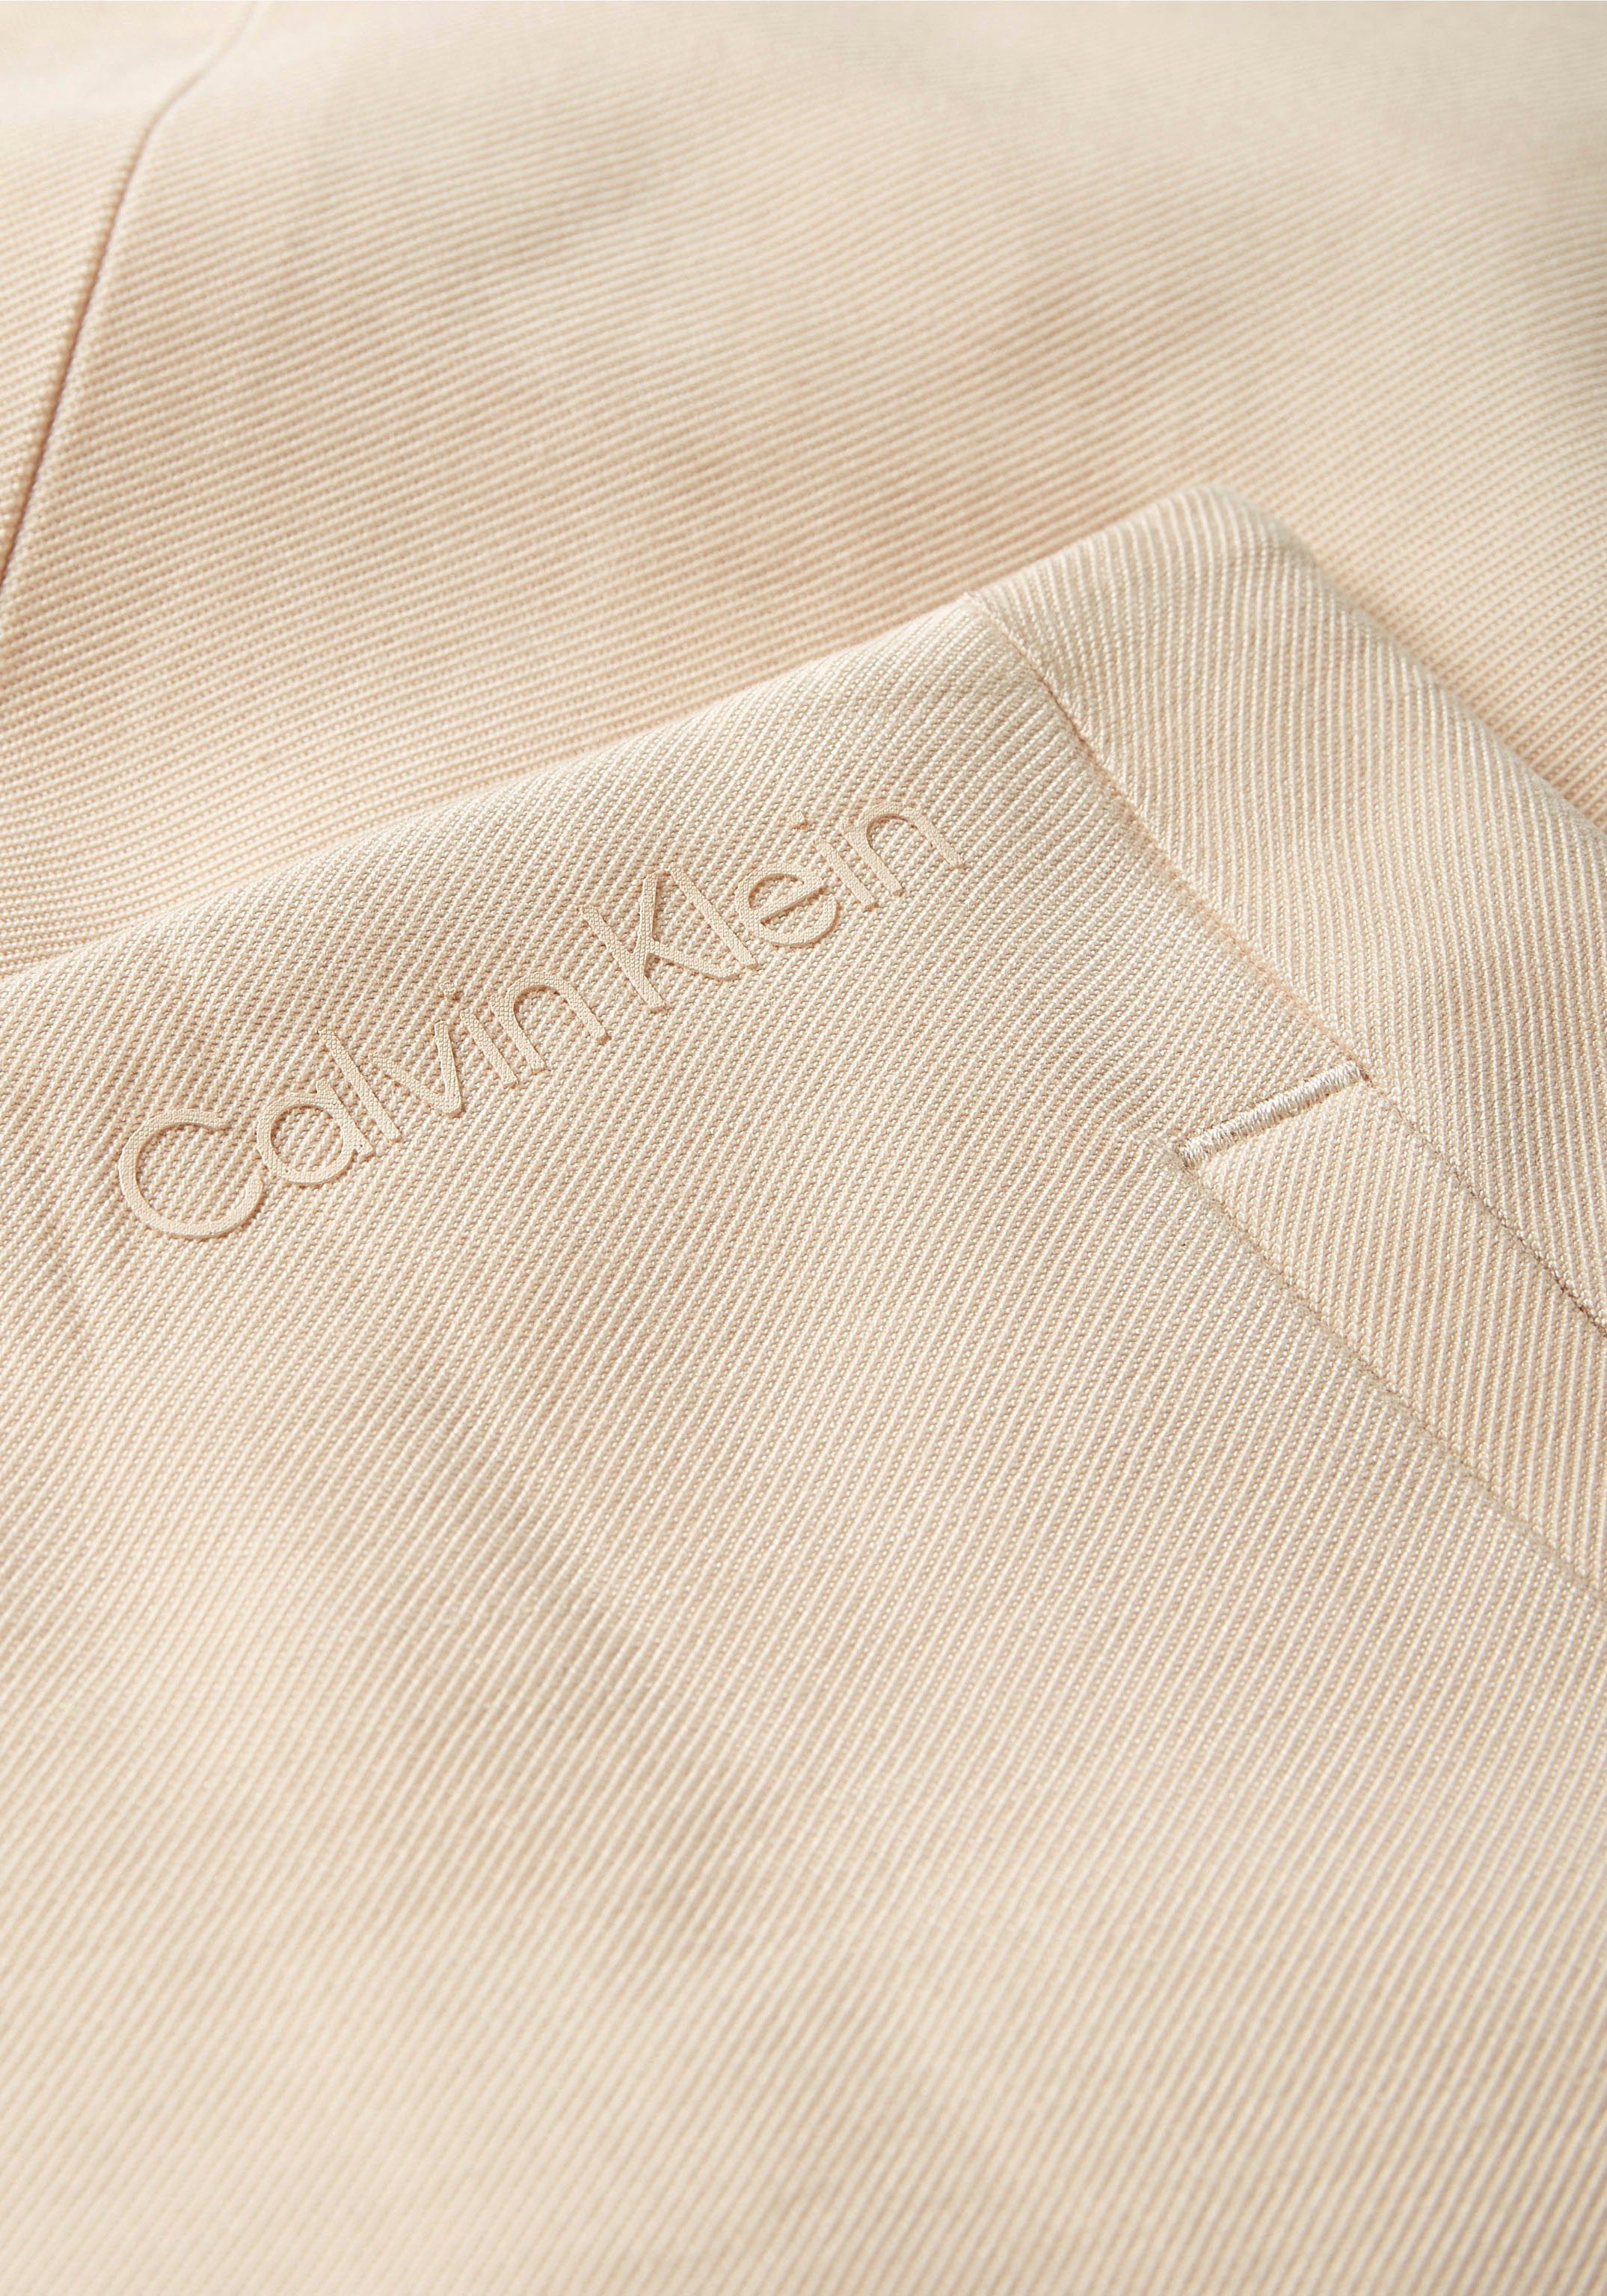 Damen Röcke Calvin Klein Minirock VISCOSE TWILL MINI SKIRT mit Calvin Klein Branding